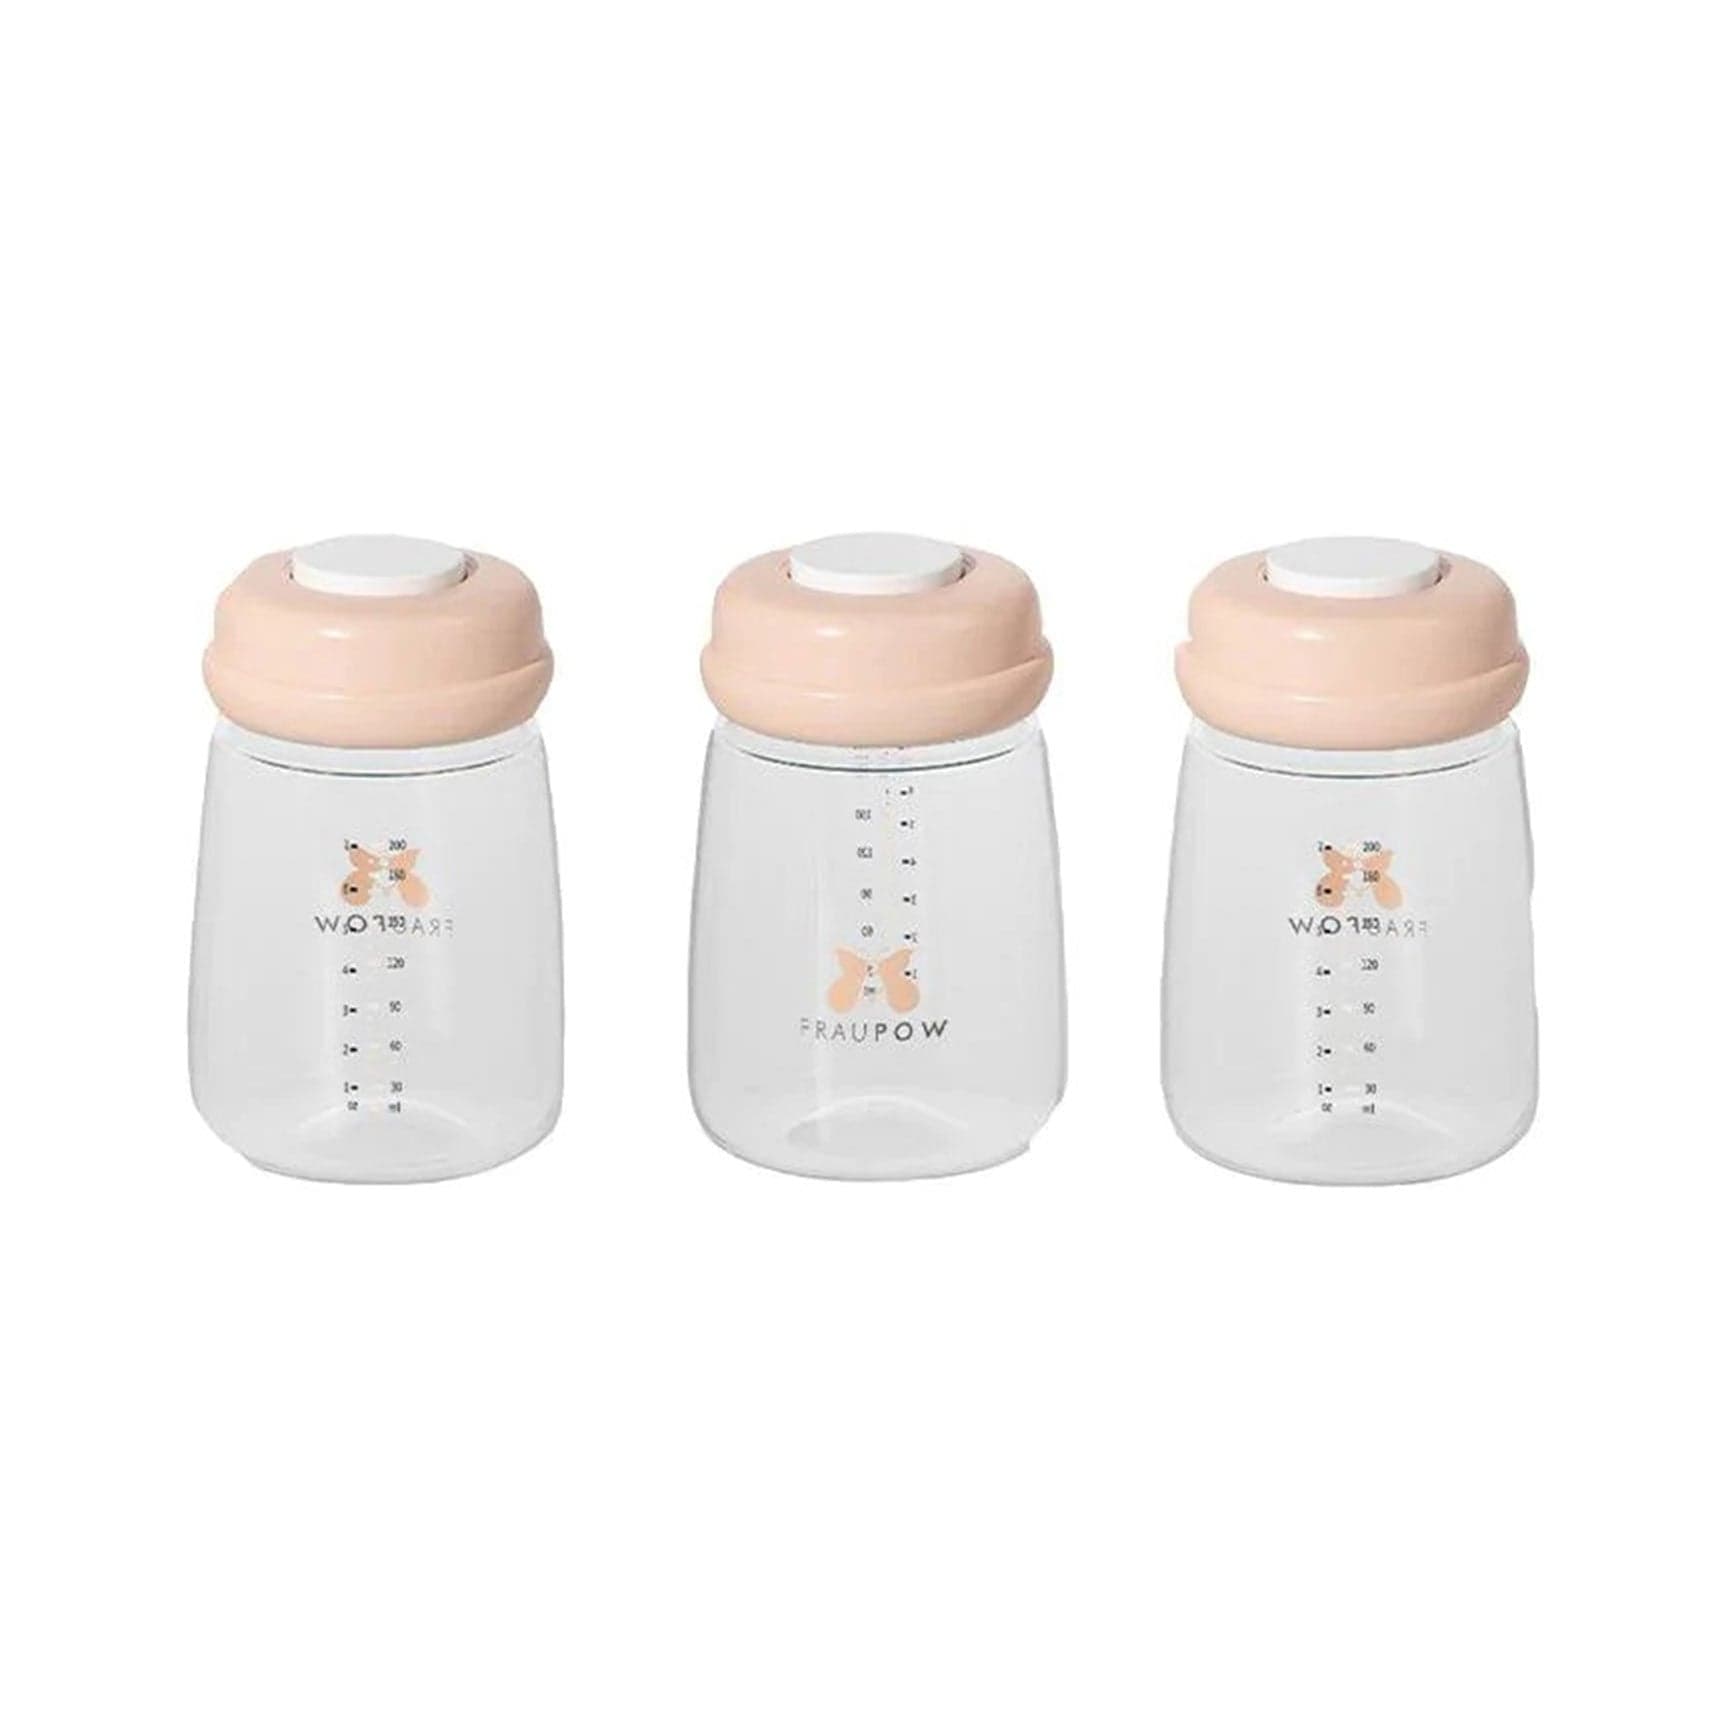 Fraupow Pack of 3 Milk Bottles Nursing & Weaning 0921-BOTTLE-3PCK 0633710895194